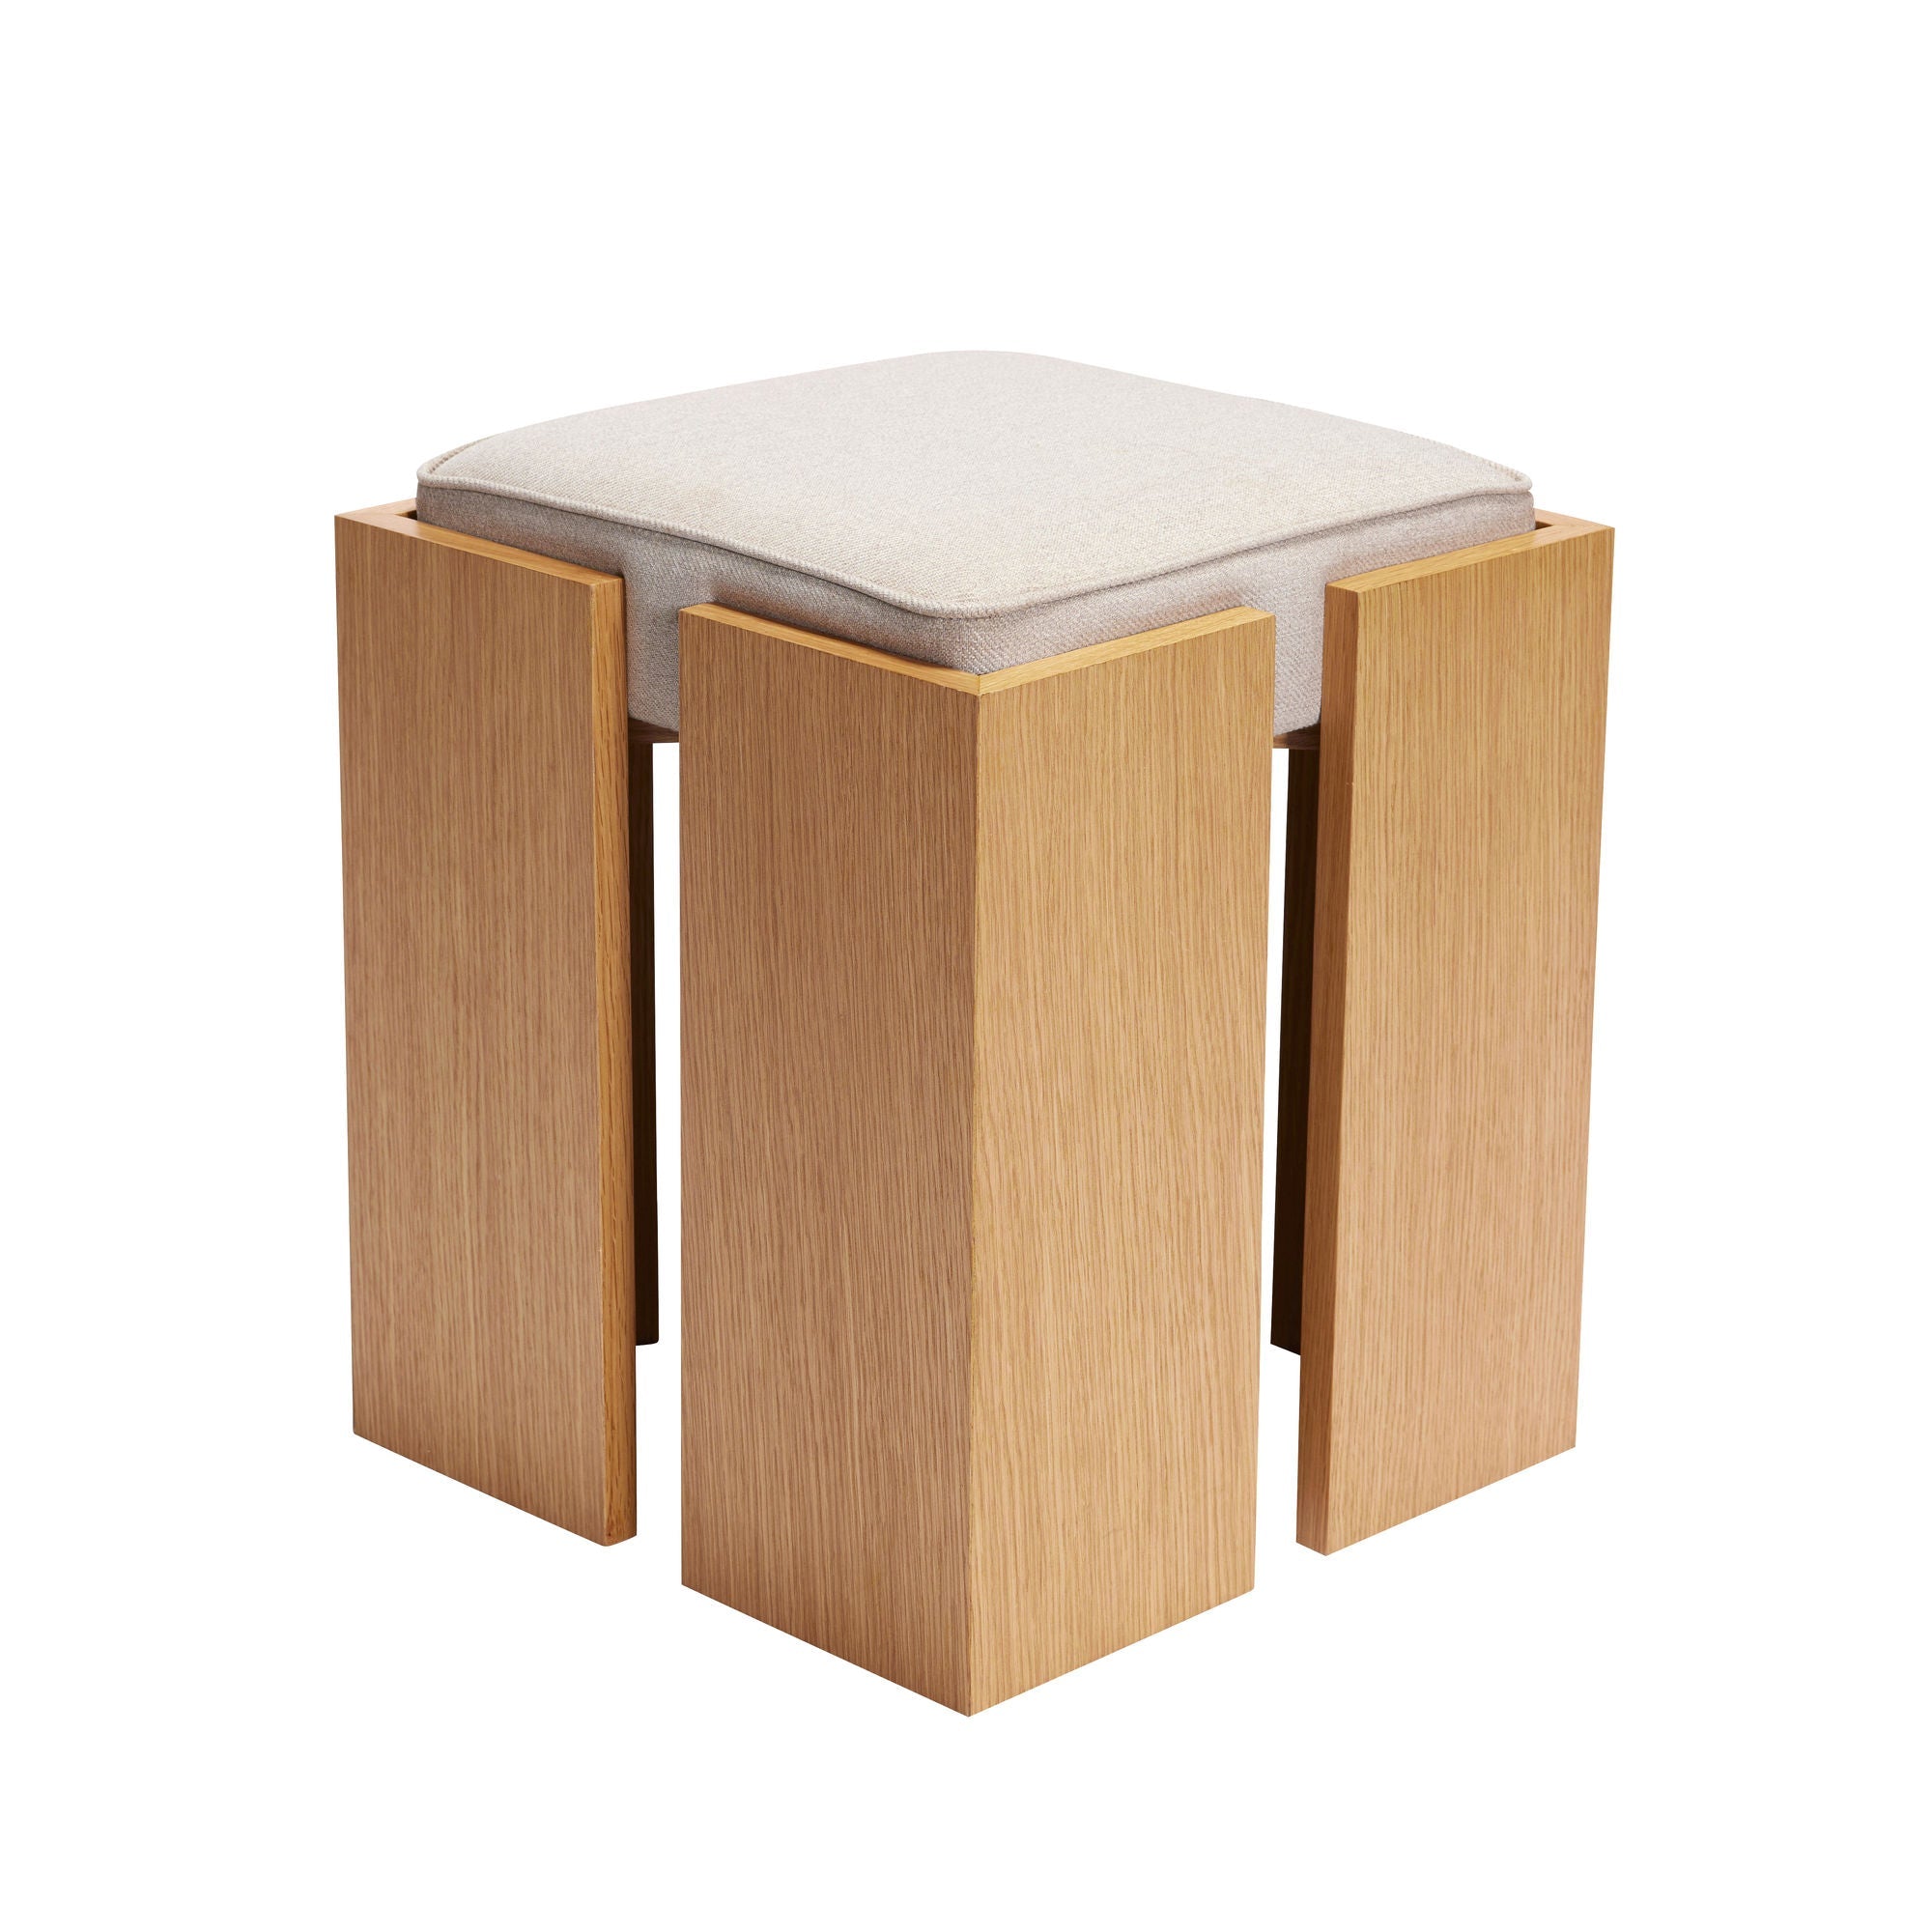 Hübsch forma stolička písek/přirozený